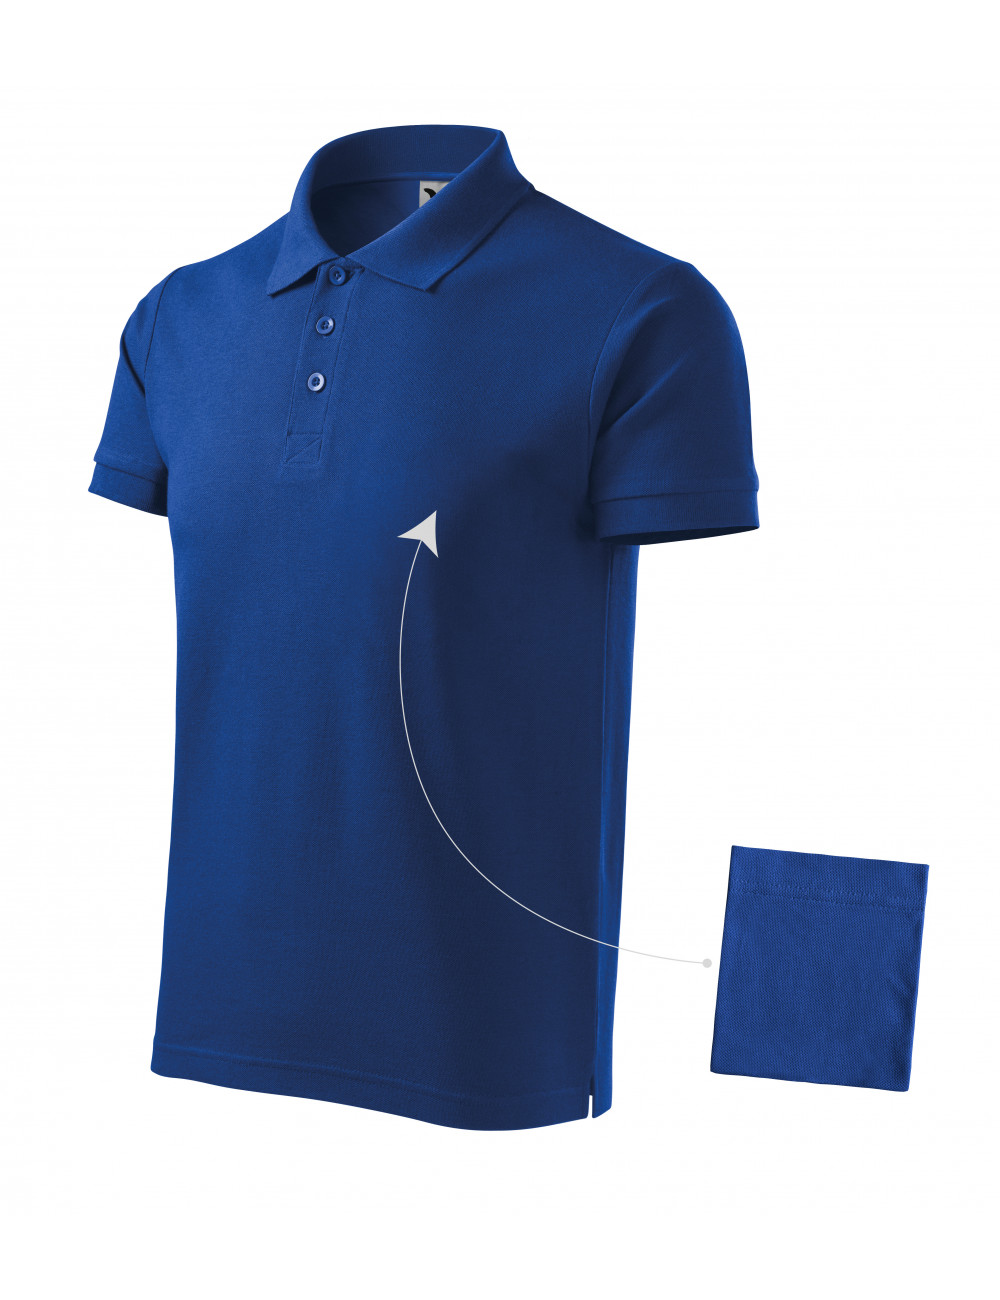 Men`s polo shirt cotton 212 cornflower blue Adler Malfini